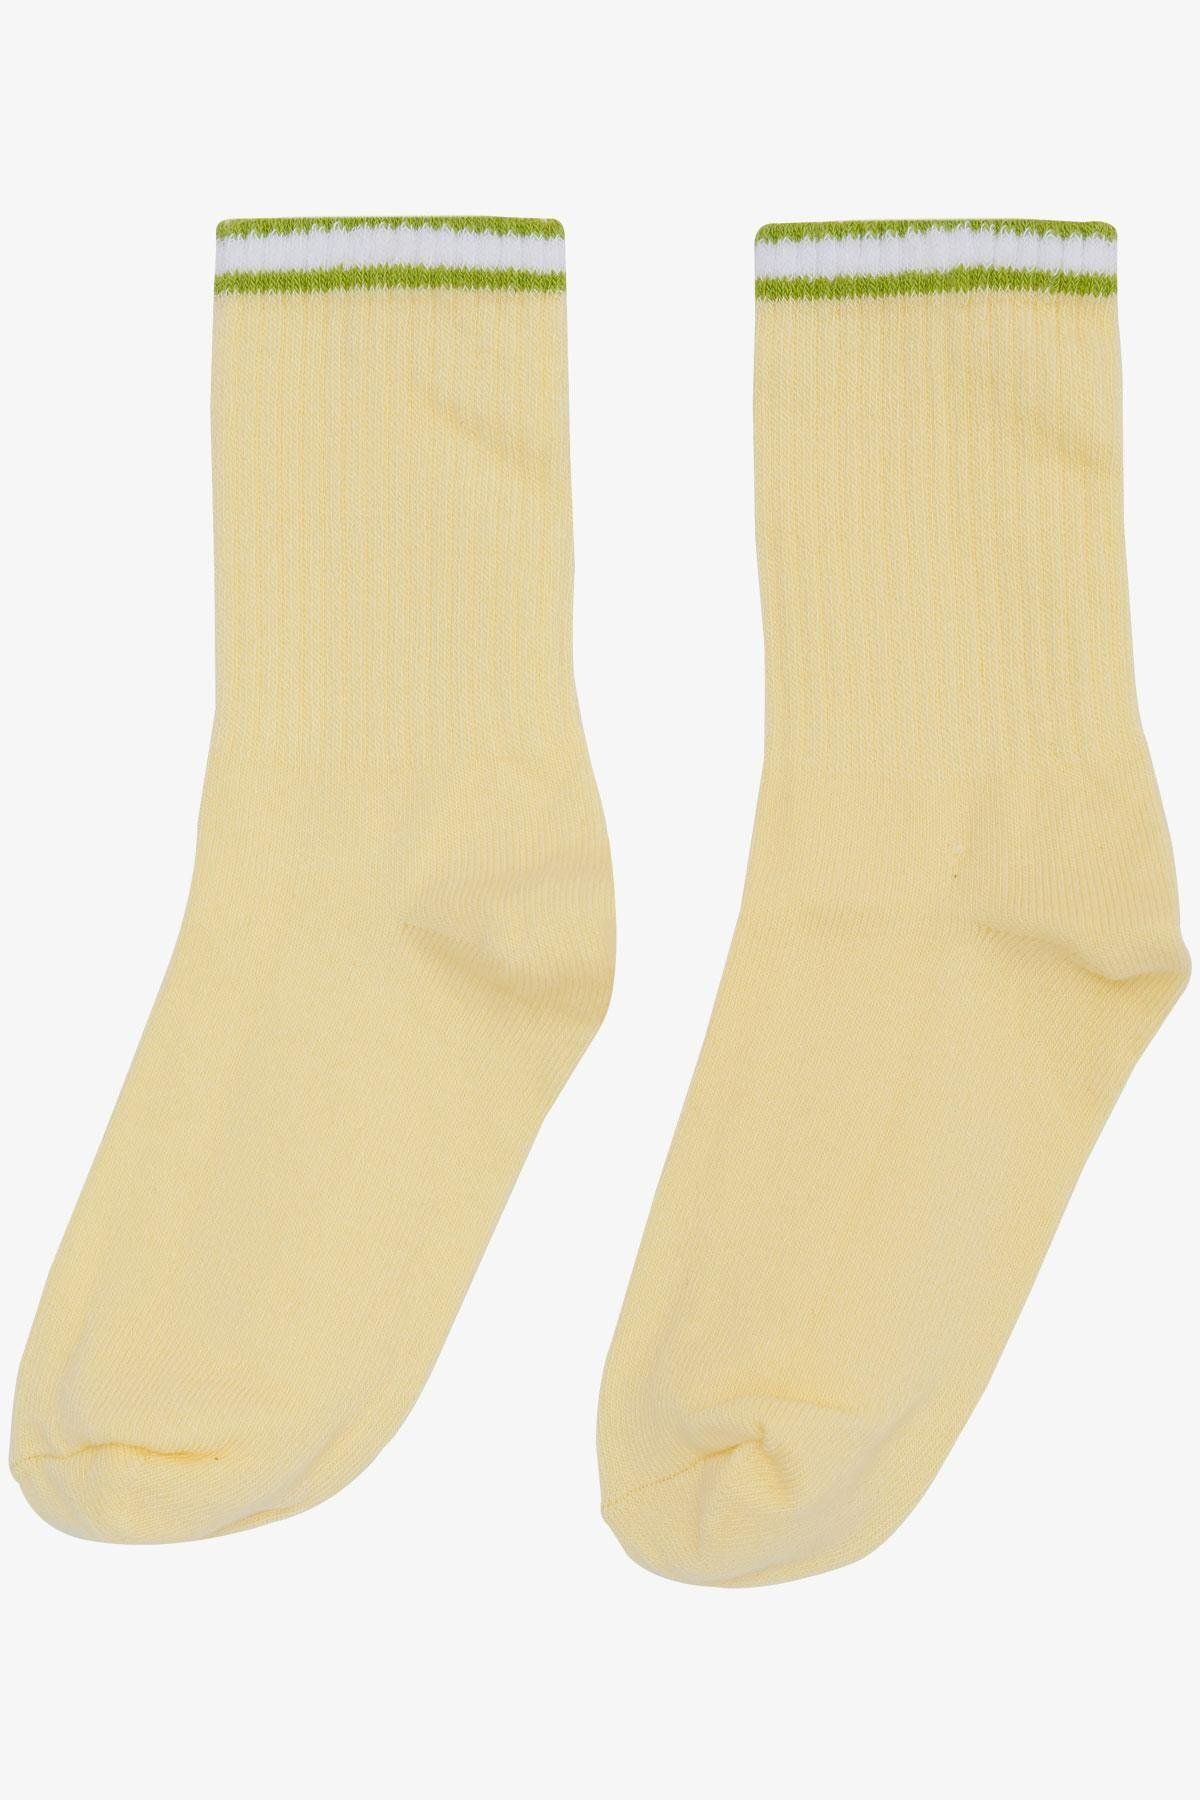 Katamino Artı Kız Çocuk Soket Çorap Çizgili 7-14 Yaş, Sarı